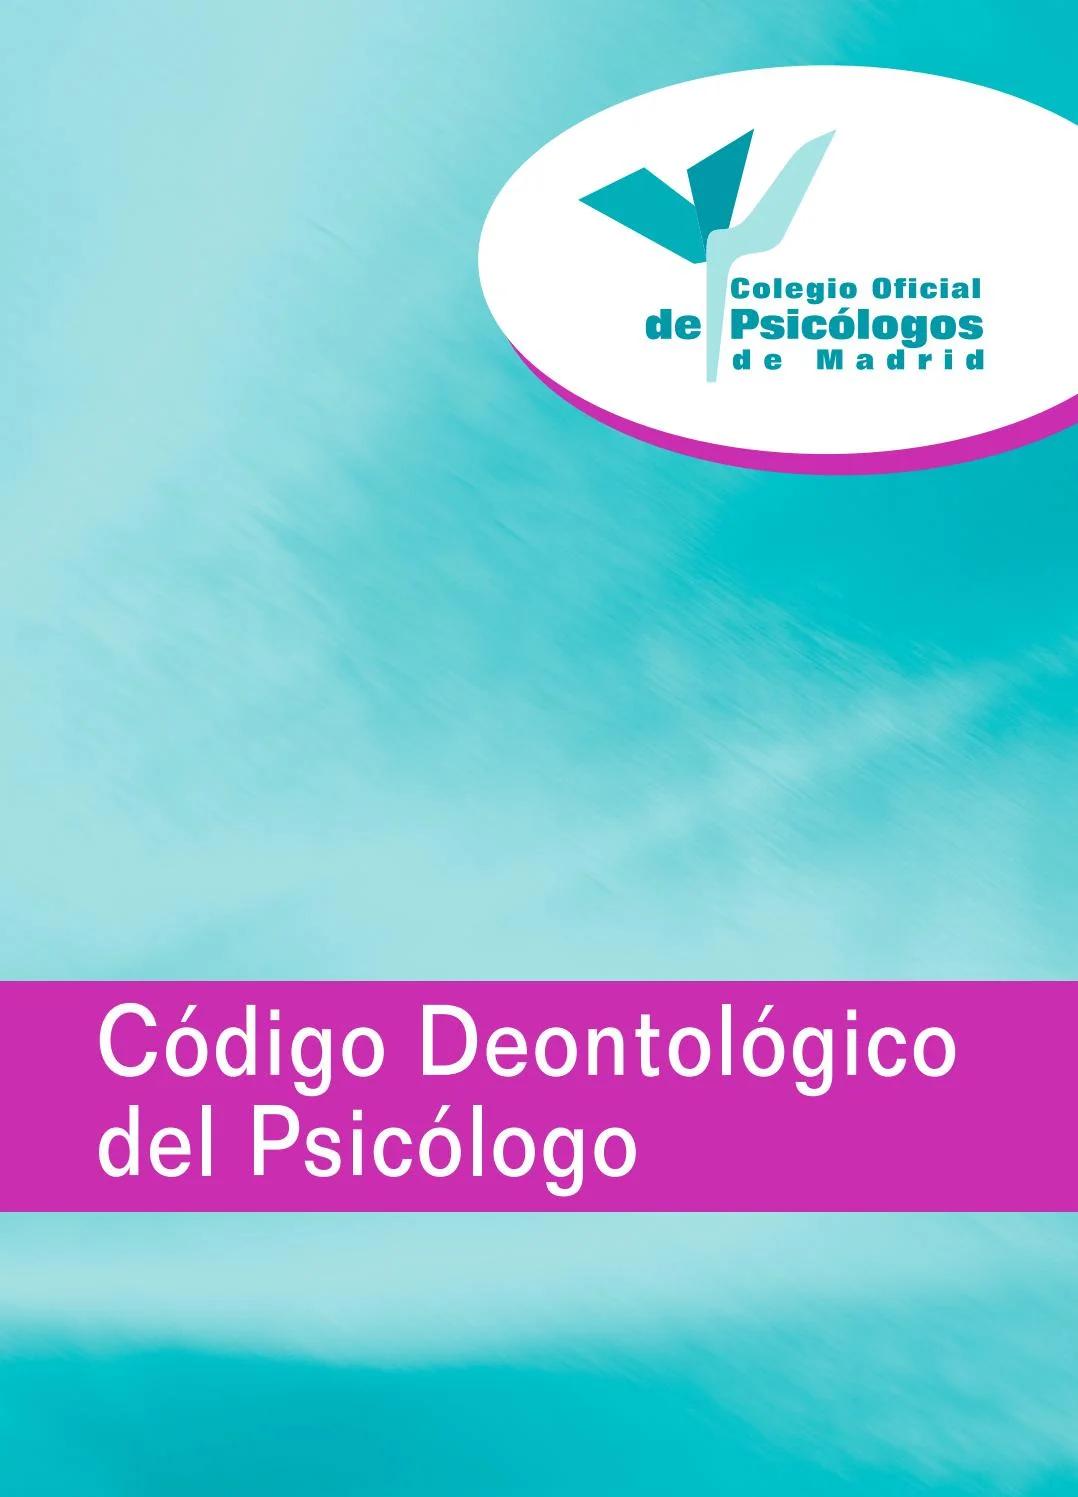 codigo deontologico de psicologia - Qué es la deontología en la psicologia